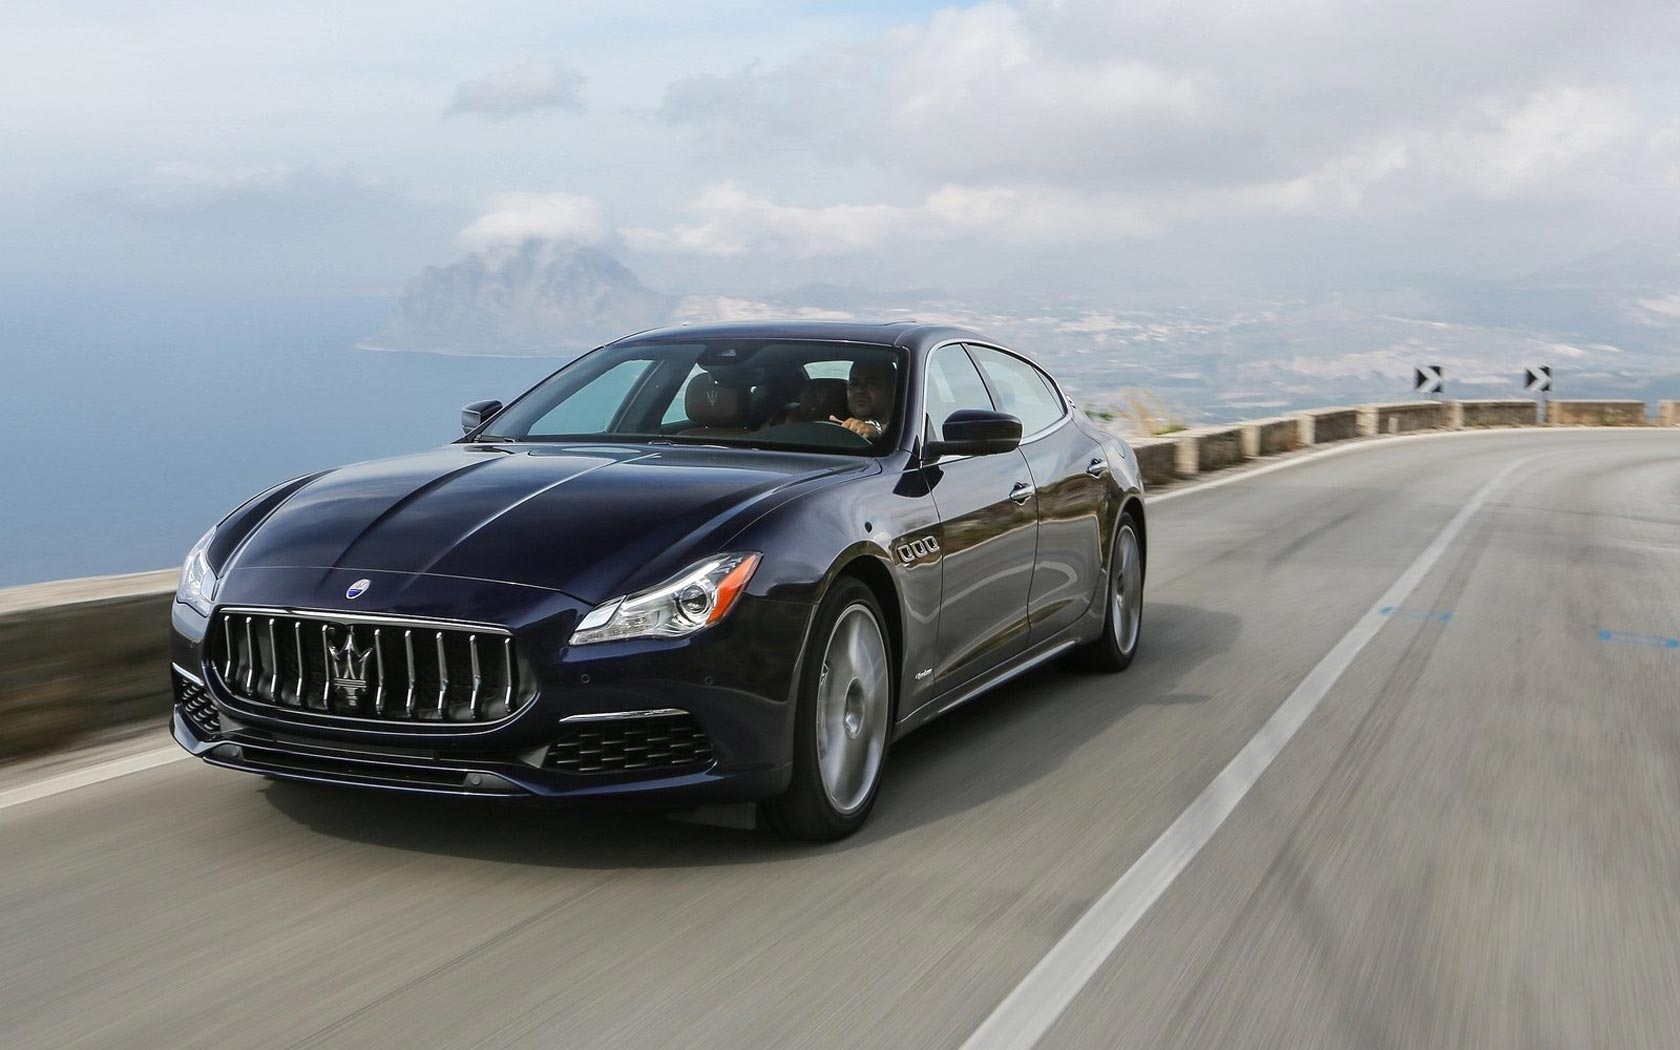  Maserati Quattroporte 